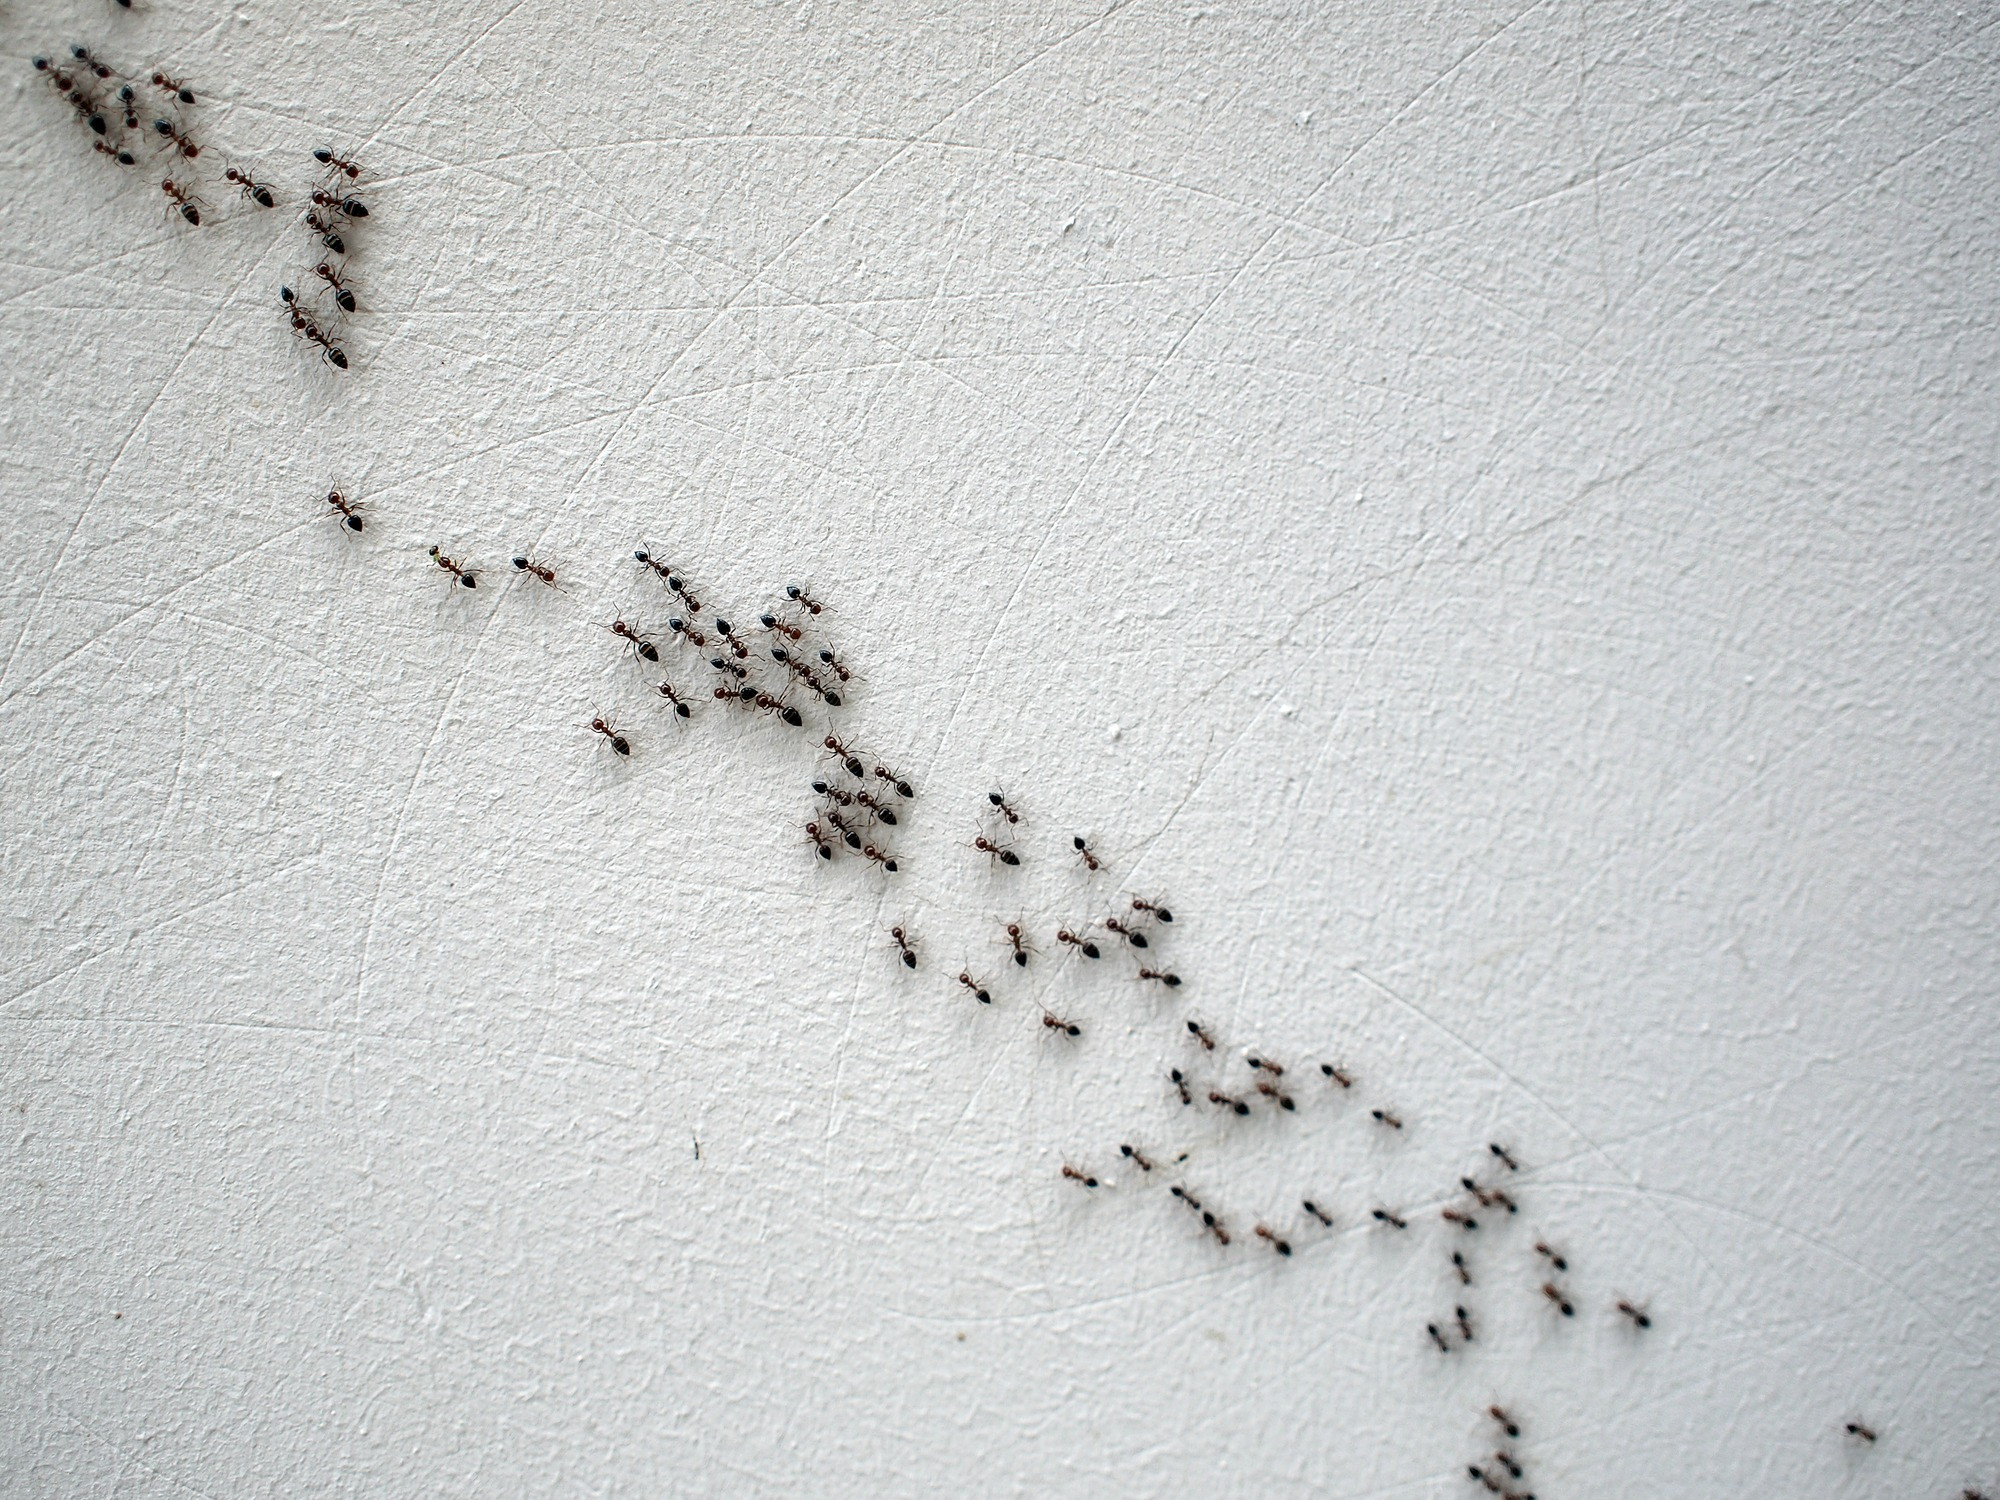 ants on kitchen table